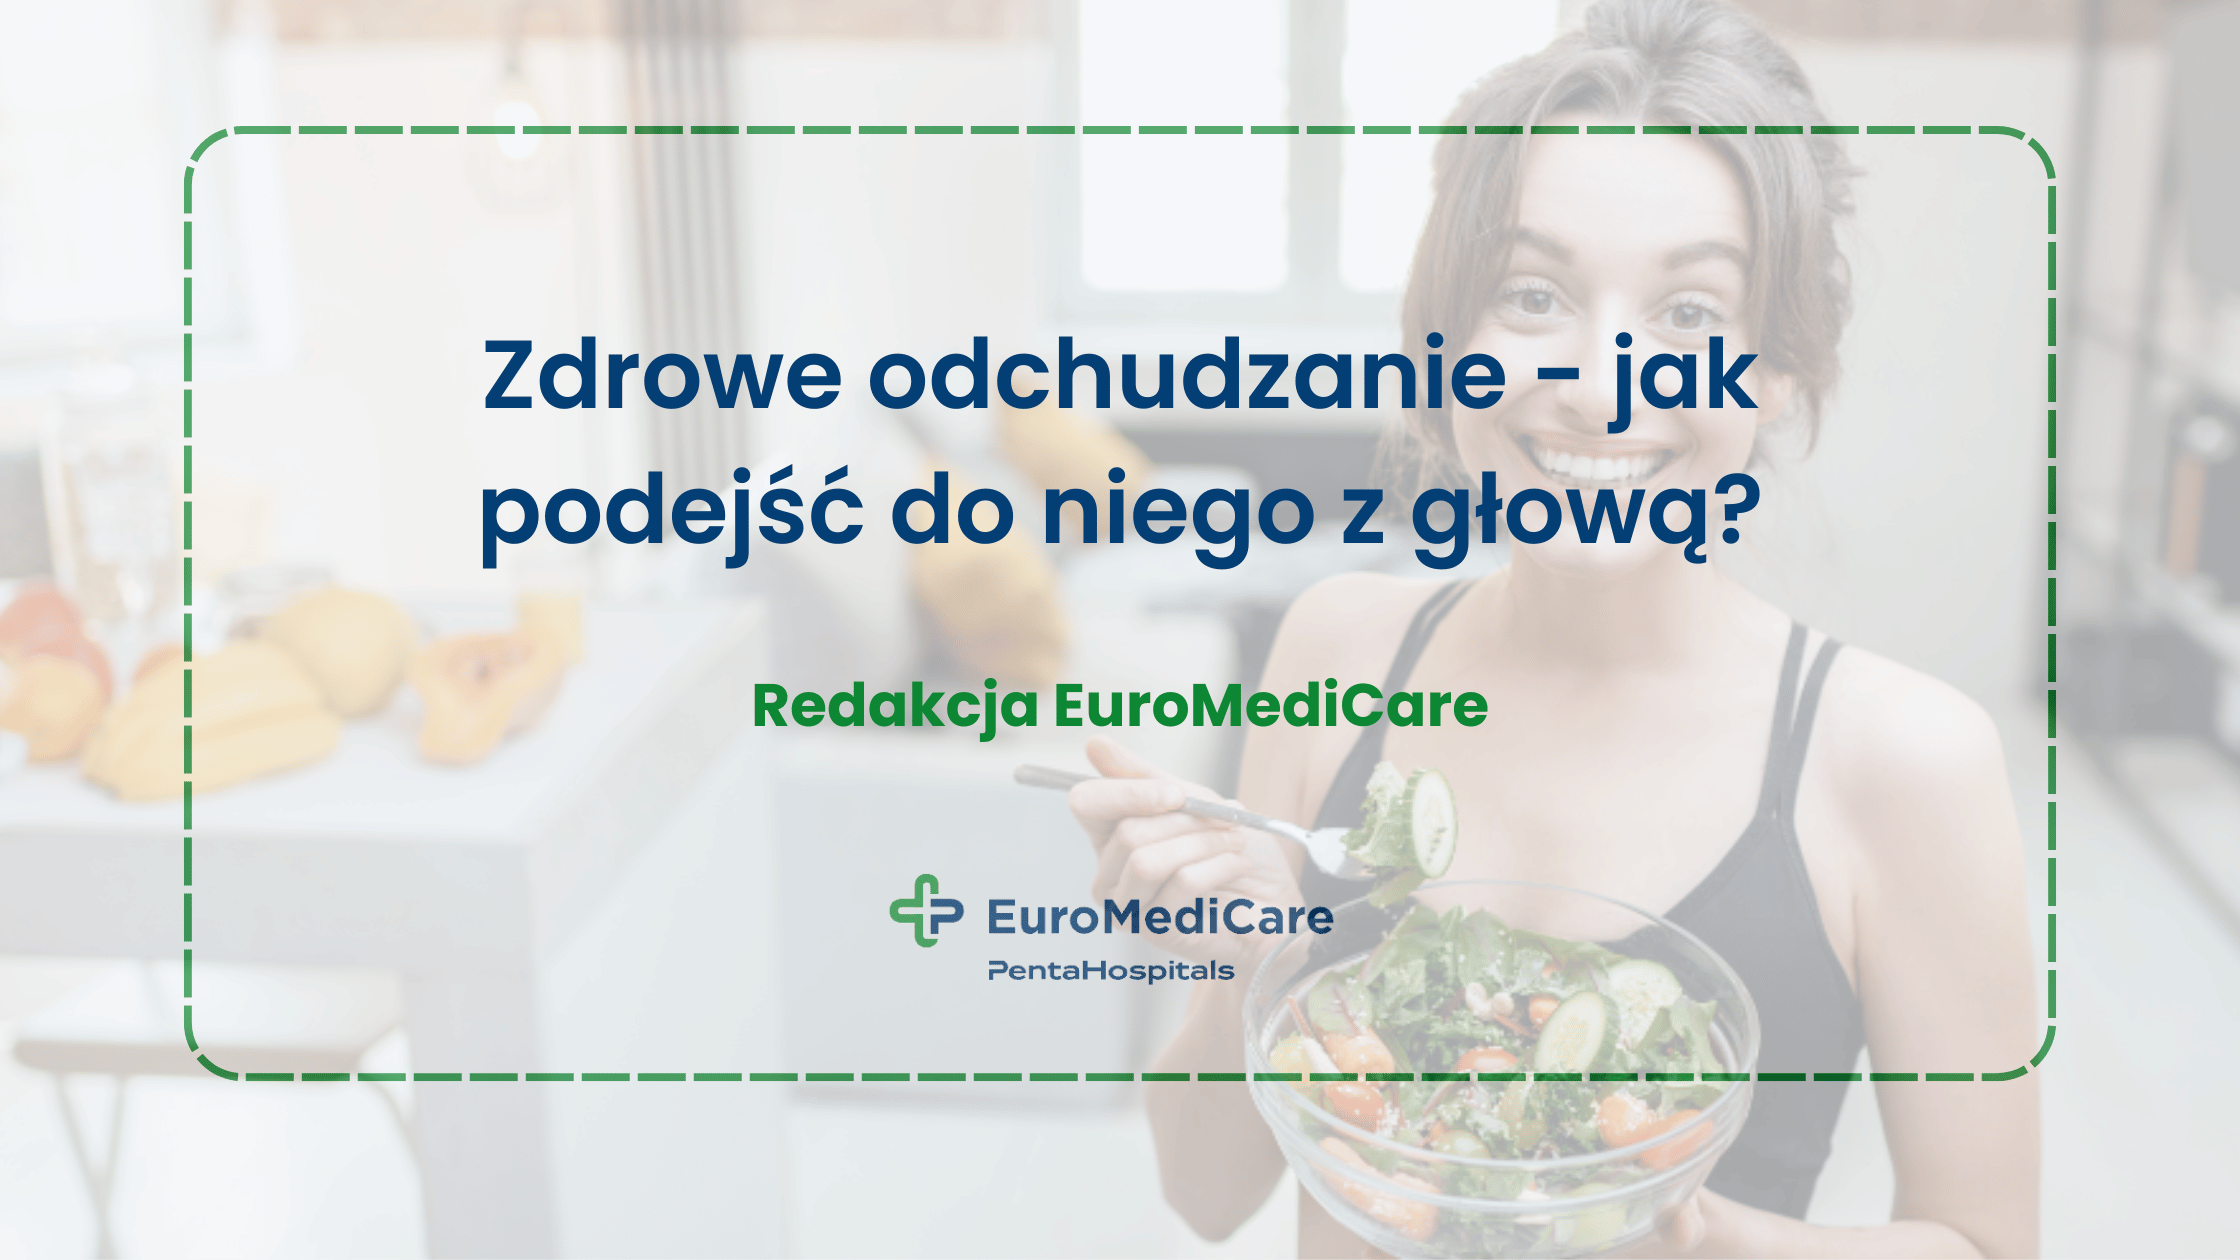 Zdrowe odchudzanie - jak podejść do niego z głową? - blog euromedicare.pl